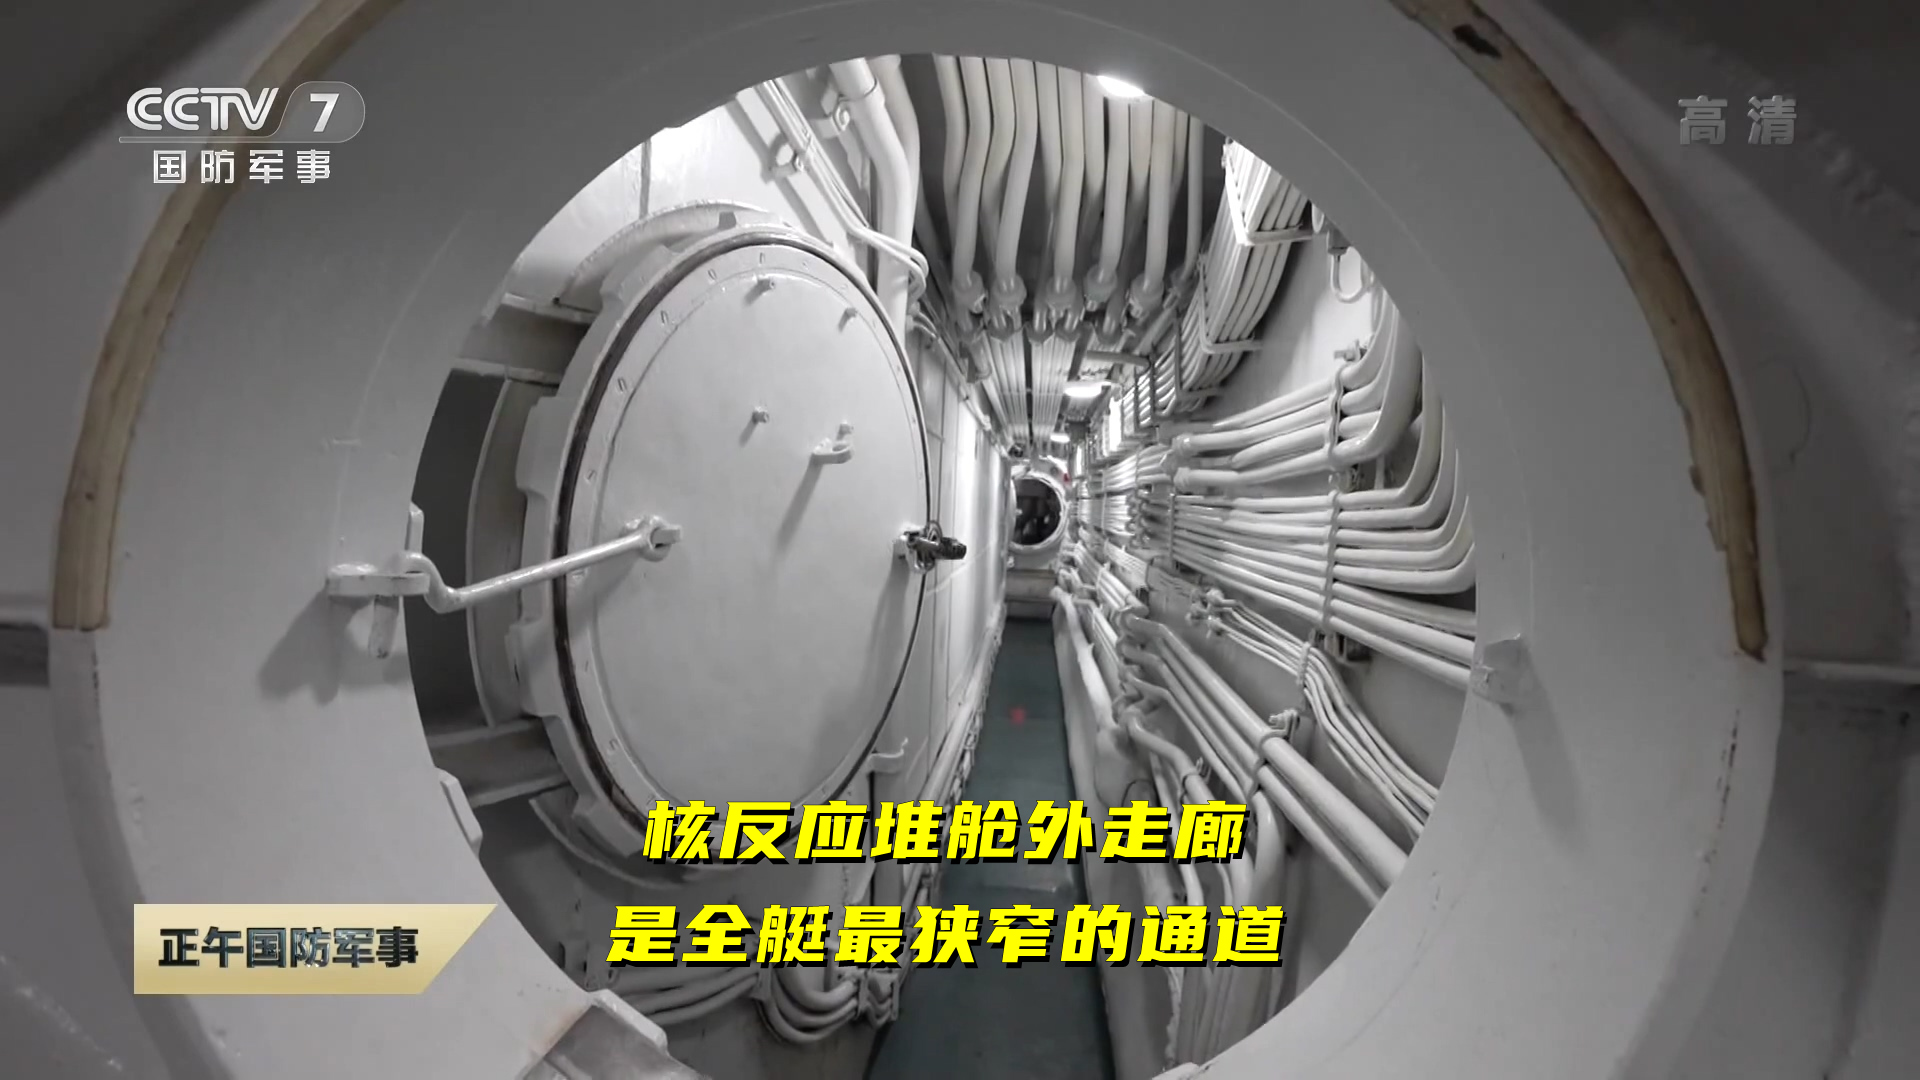 长征一号攻击核潜艇:公开核反应堆舱,厚重铅板可有效防止核泄漏